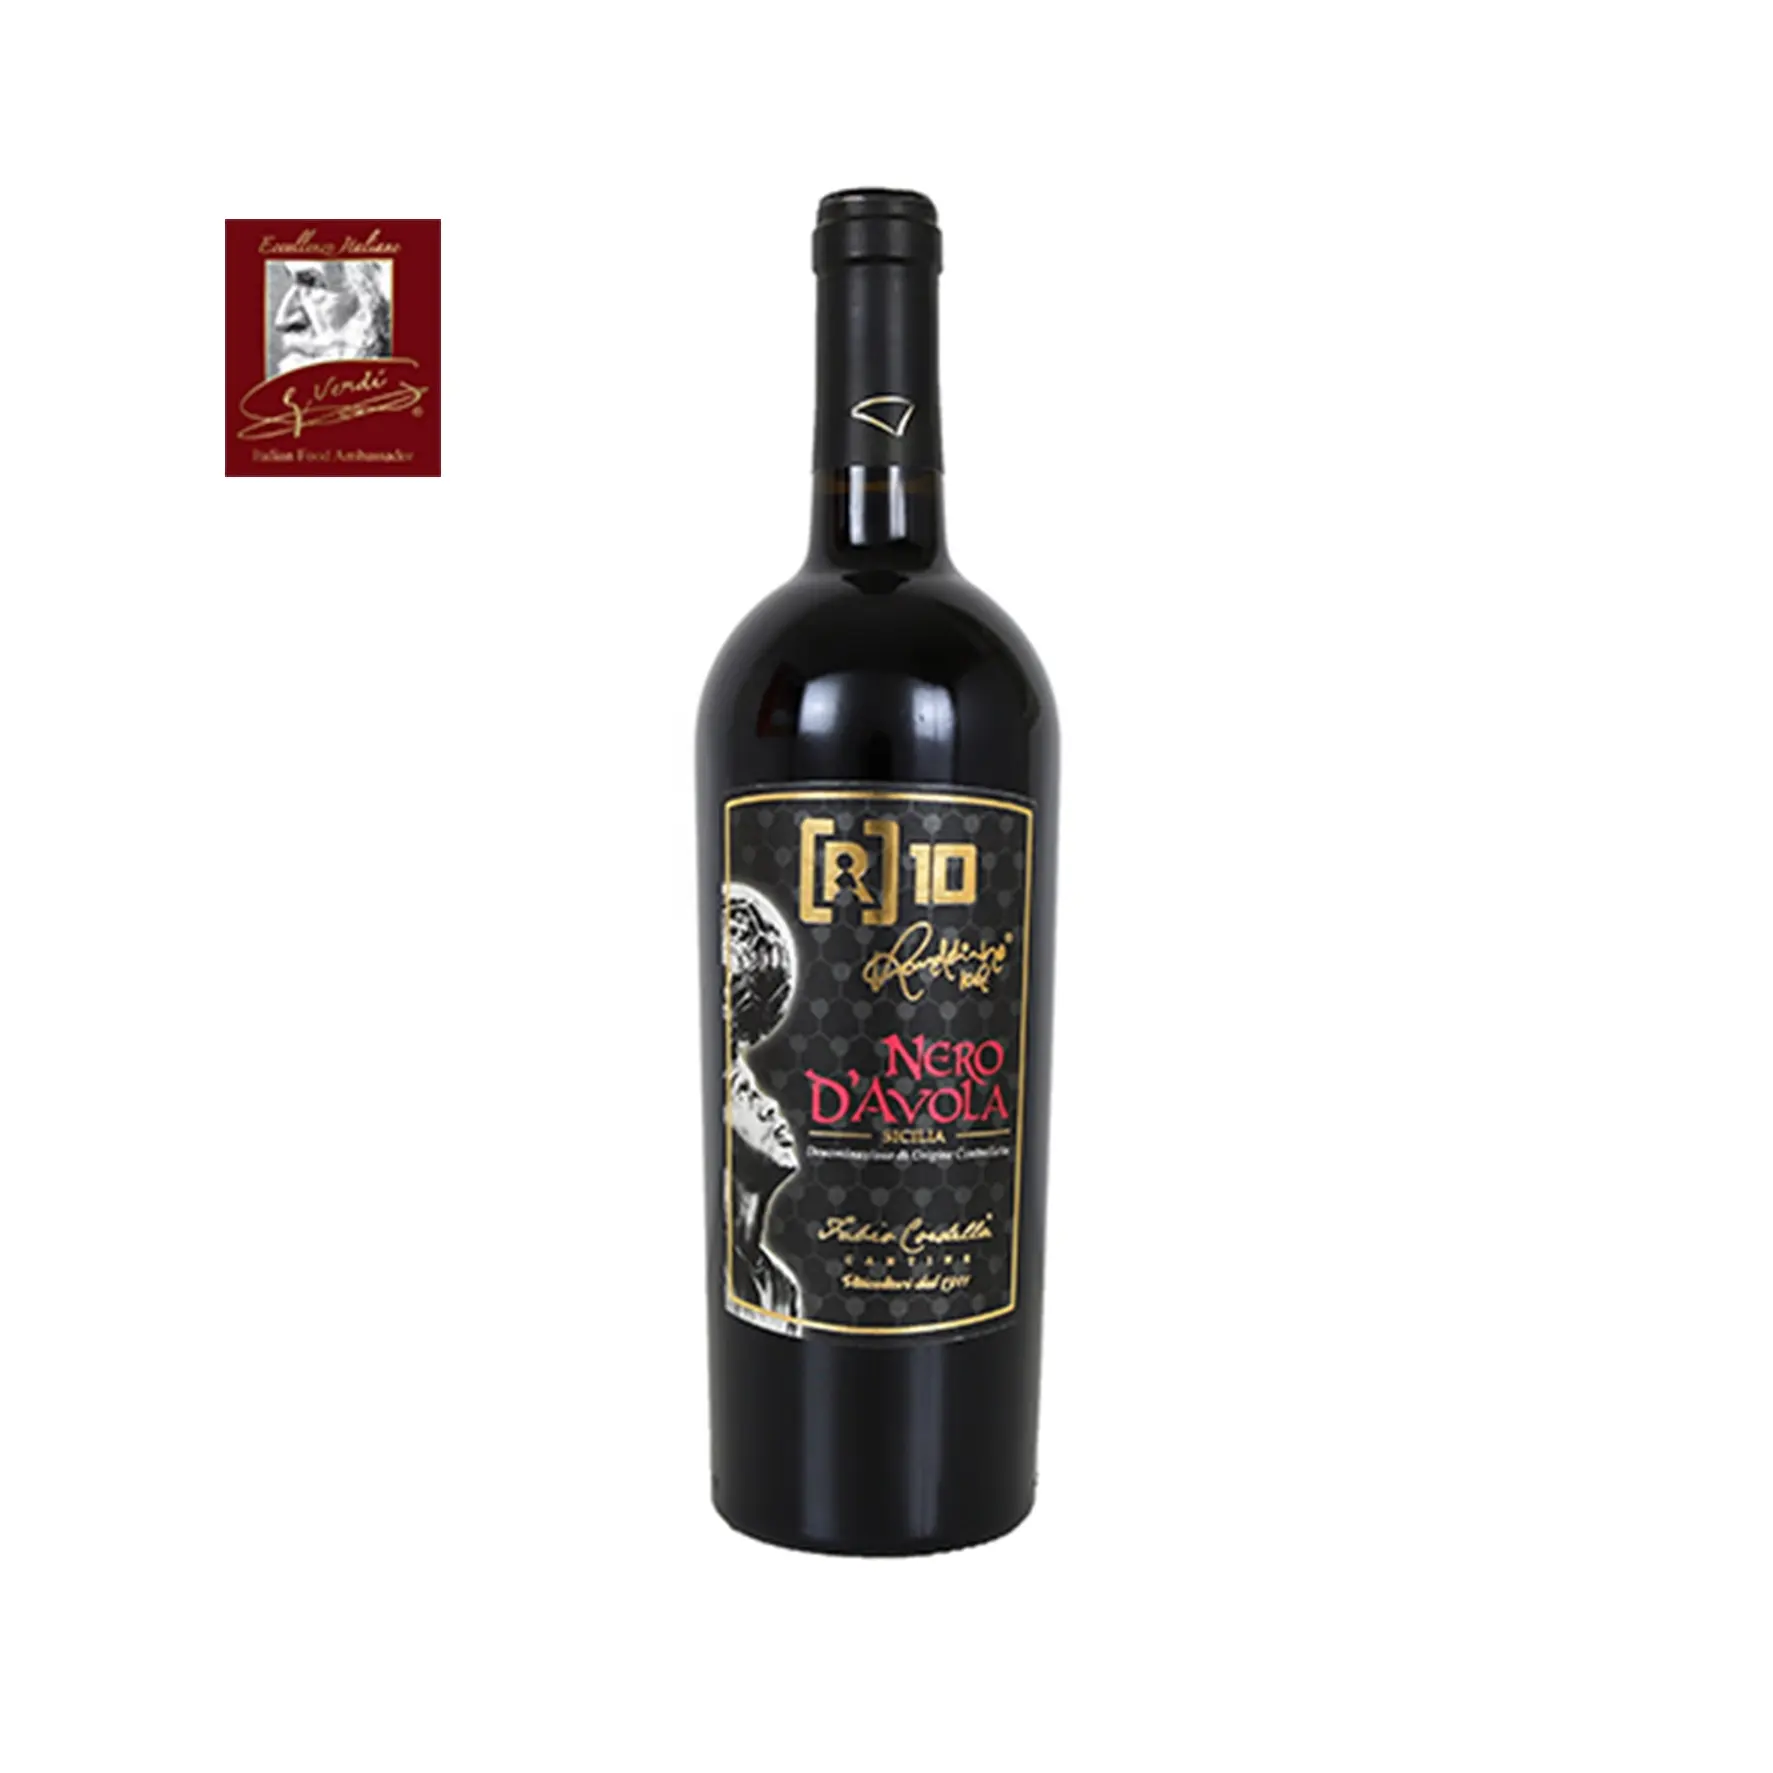 Ronaldinho [R]10 Italienischer Rotwein NERO D'AVOLA DOC 750ml Flaschen Der Wein von Champions GVERDI Selection Made Italy Wein